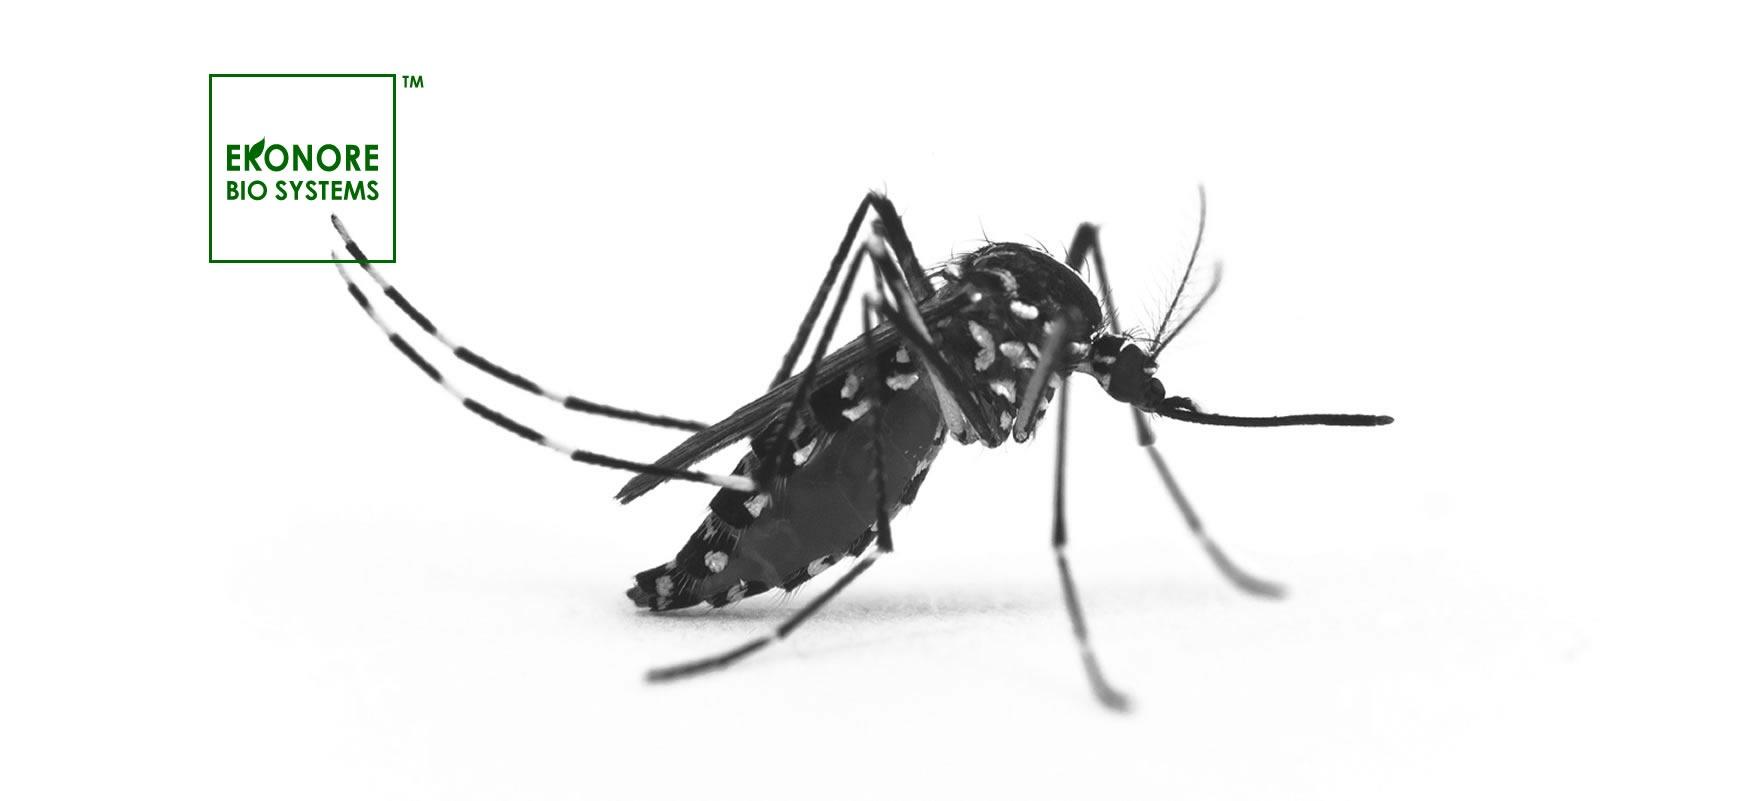 Zanzara tigre (Aedes albopictus)